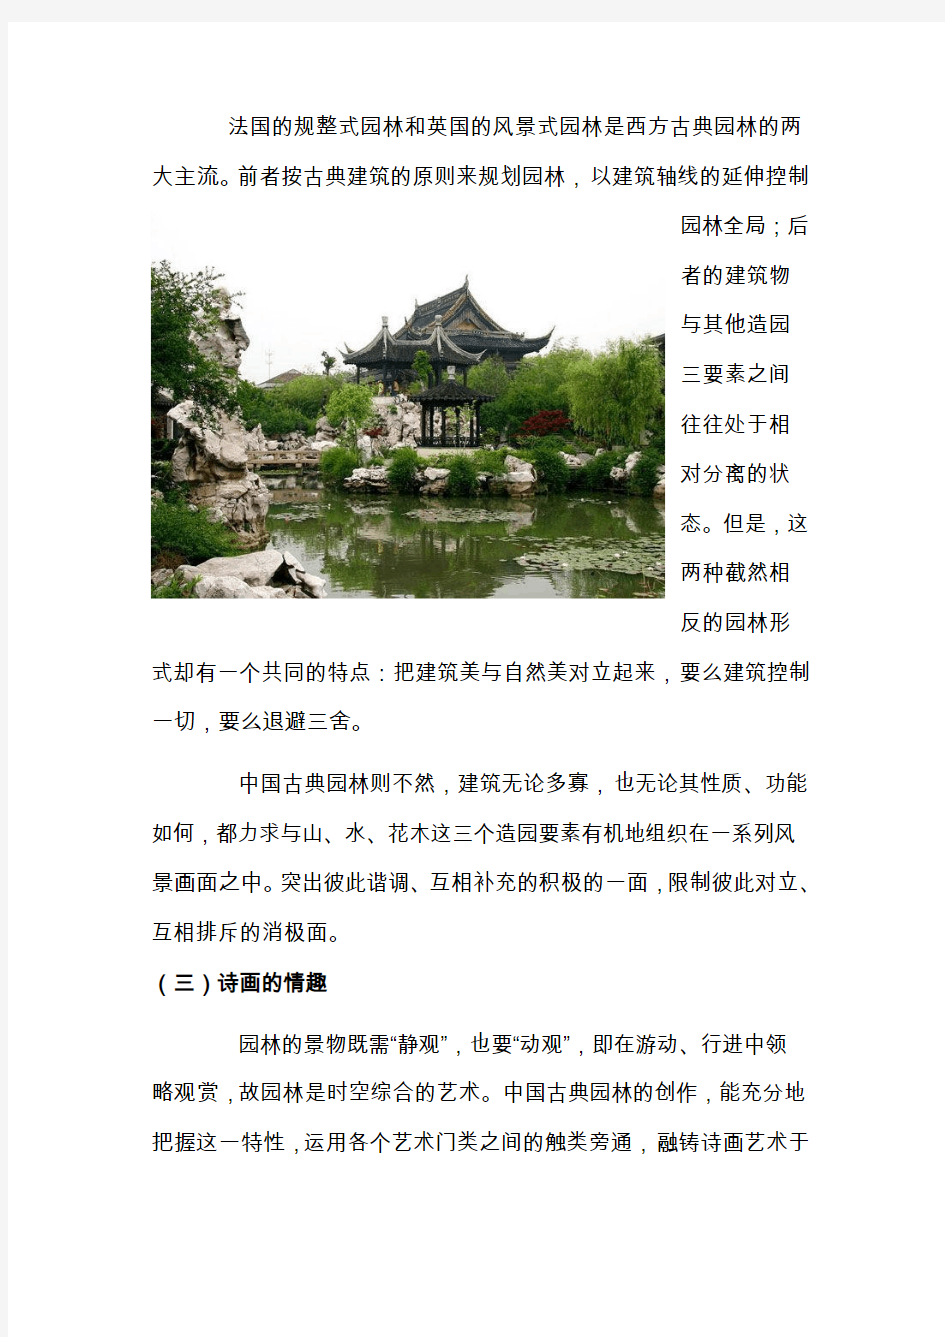 中国古典园林特点赏析